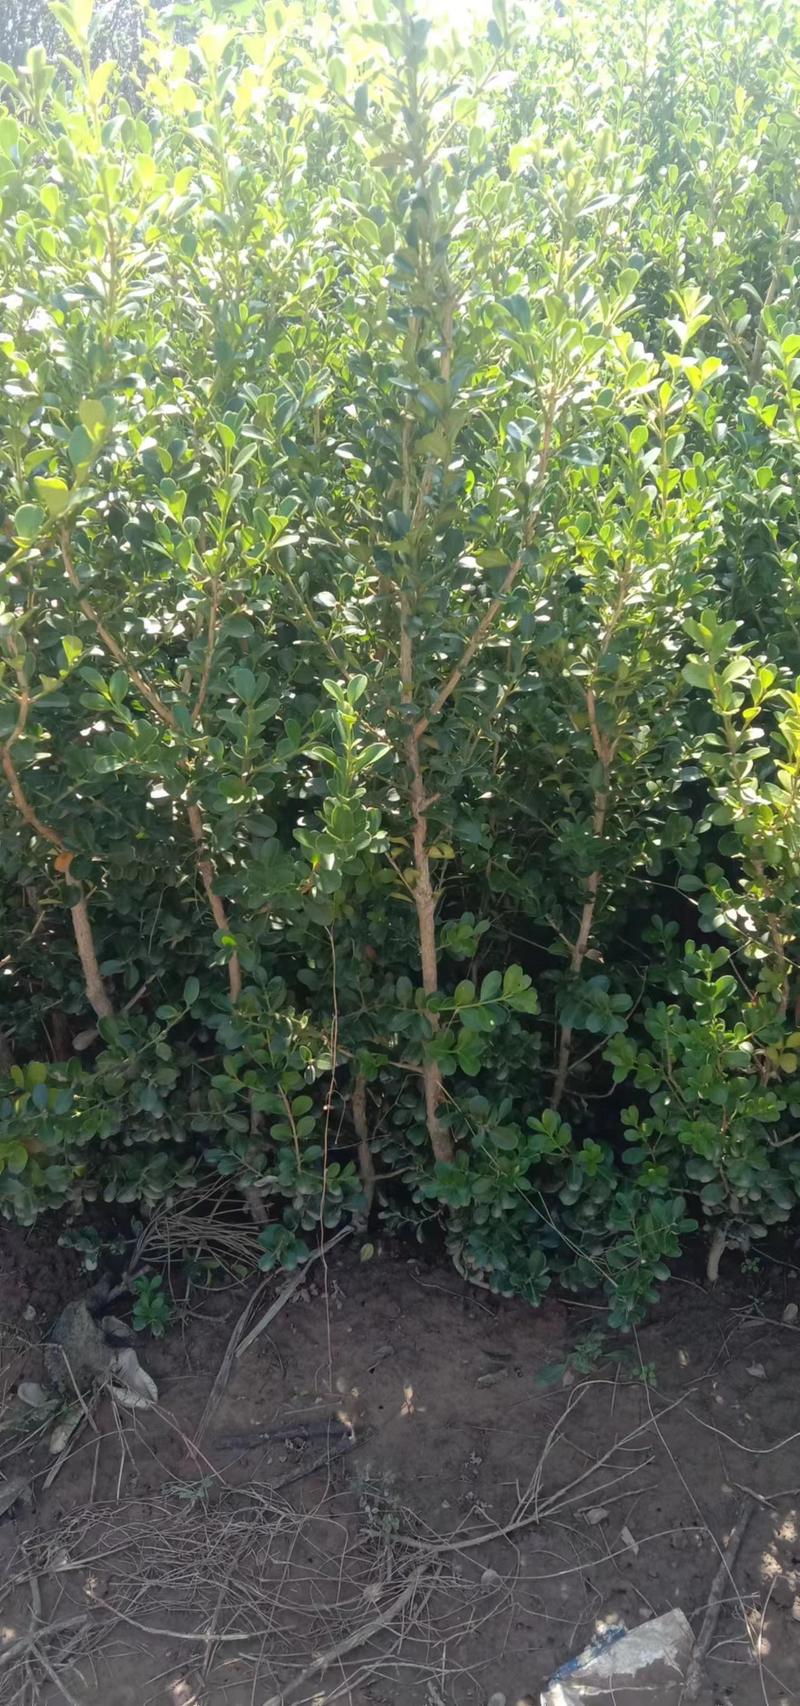 1米高小叶黄杨独杆树10万棵自家苗圃